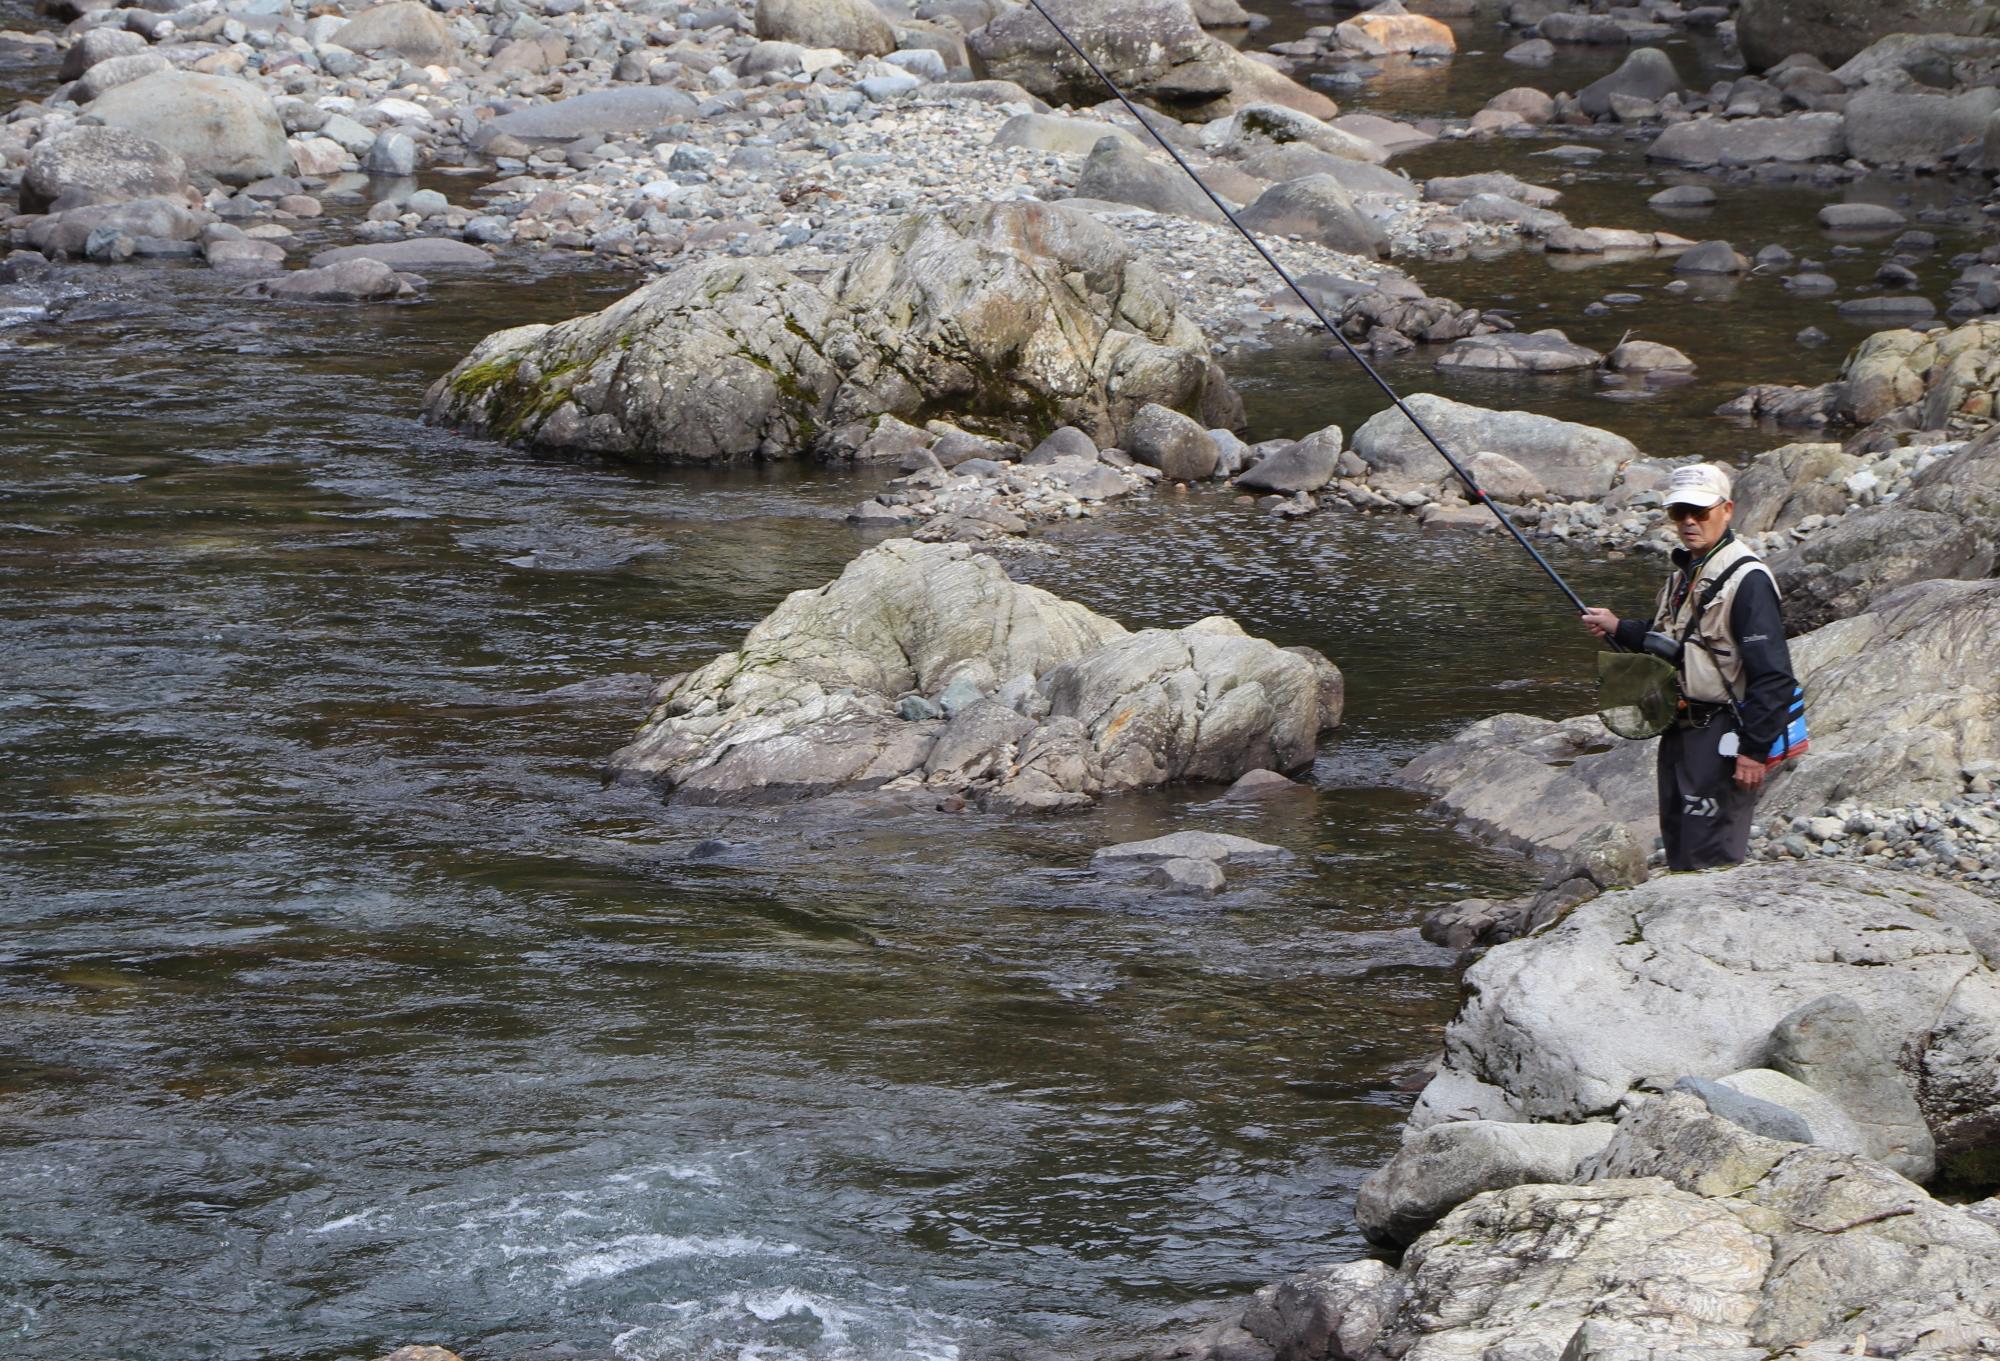 引原川の流れに釣り糸を垂らしアマゴ釣りをする釣り人の写真